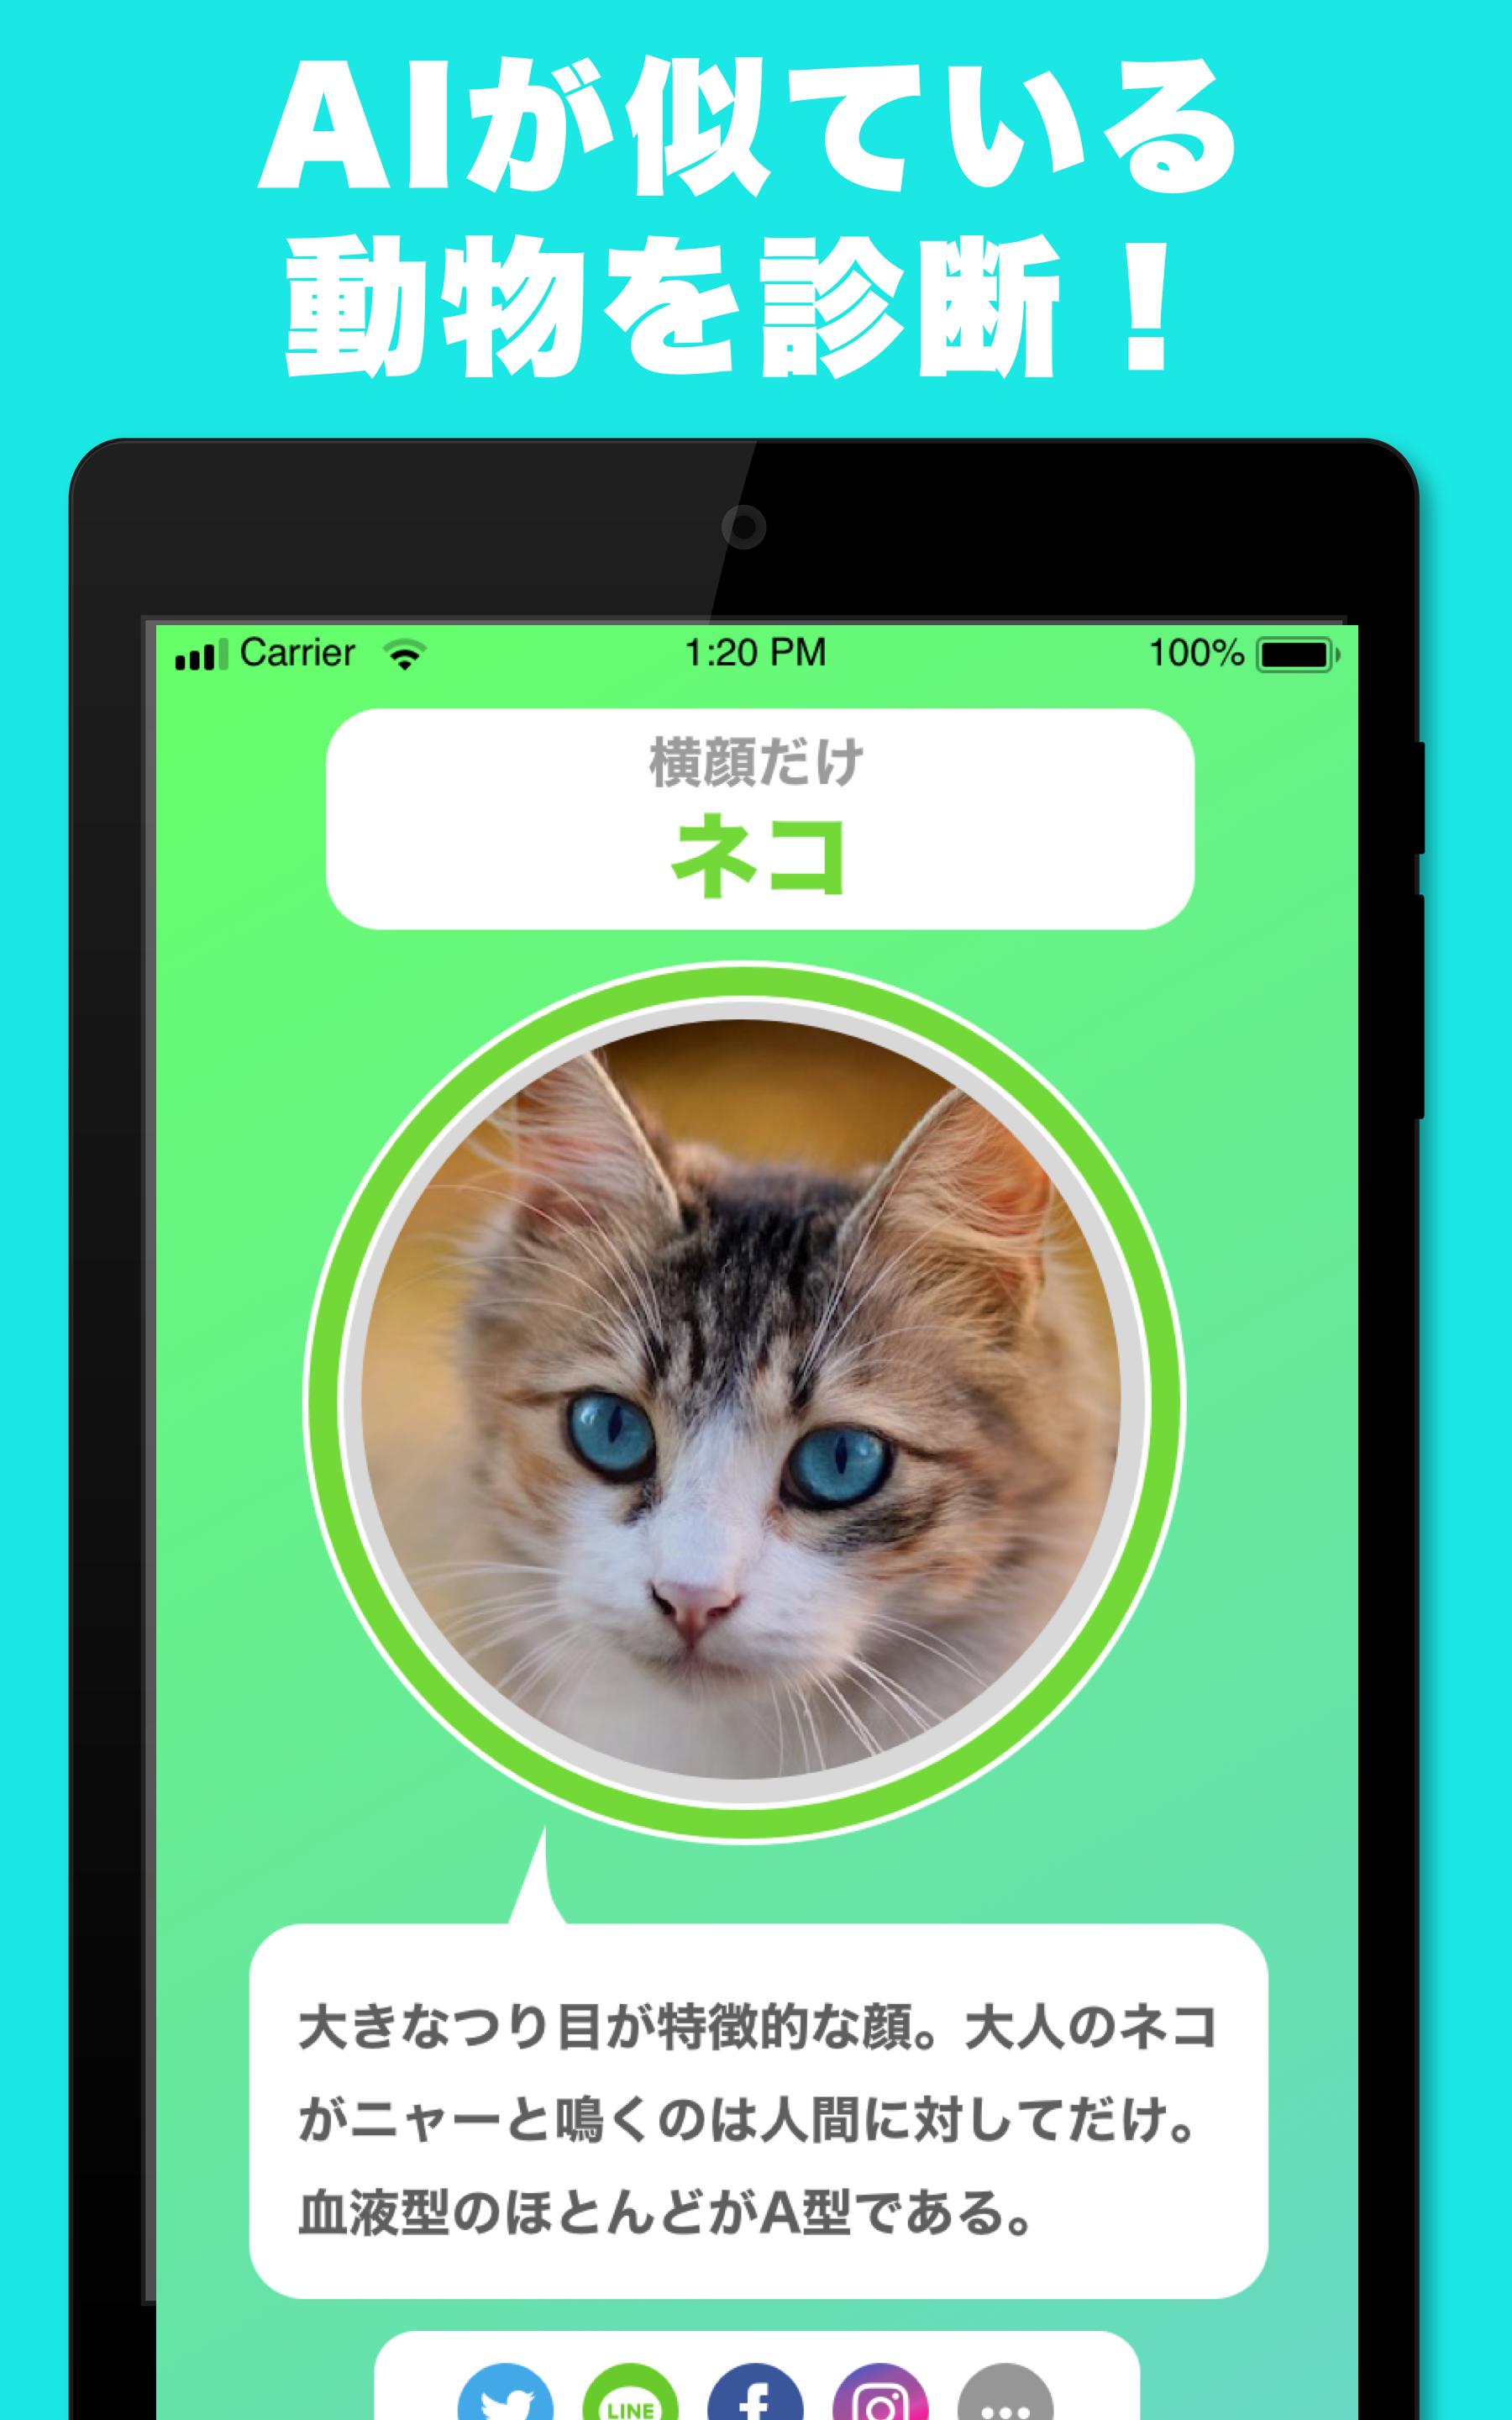 似てる顔の動物を診断するアプリ どうぶつカメラ そっくりな動物をai診断 For Android Apk Download